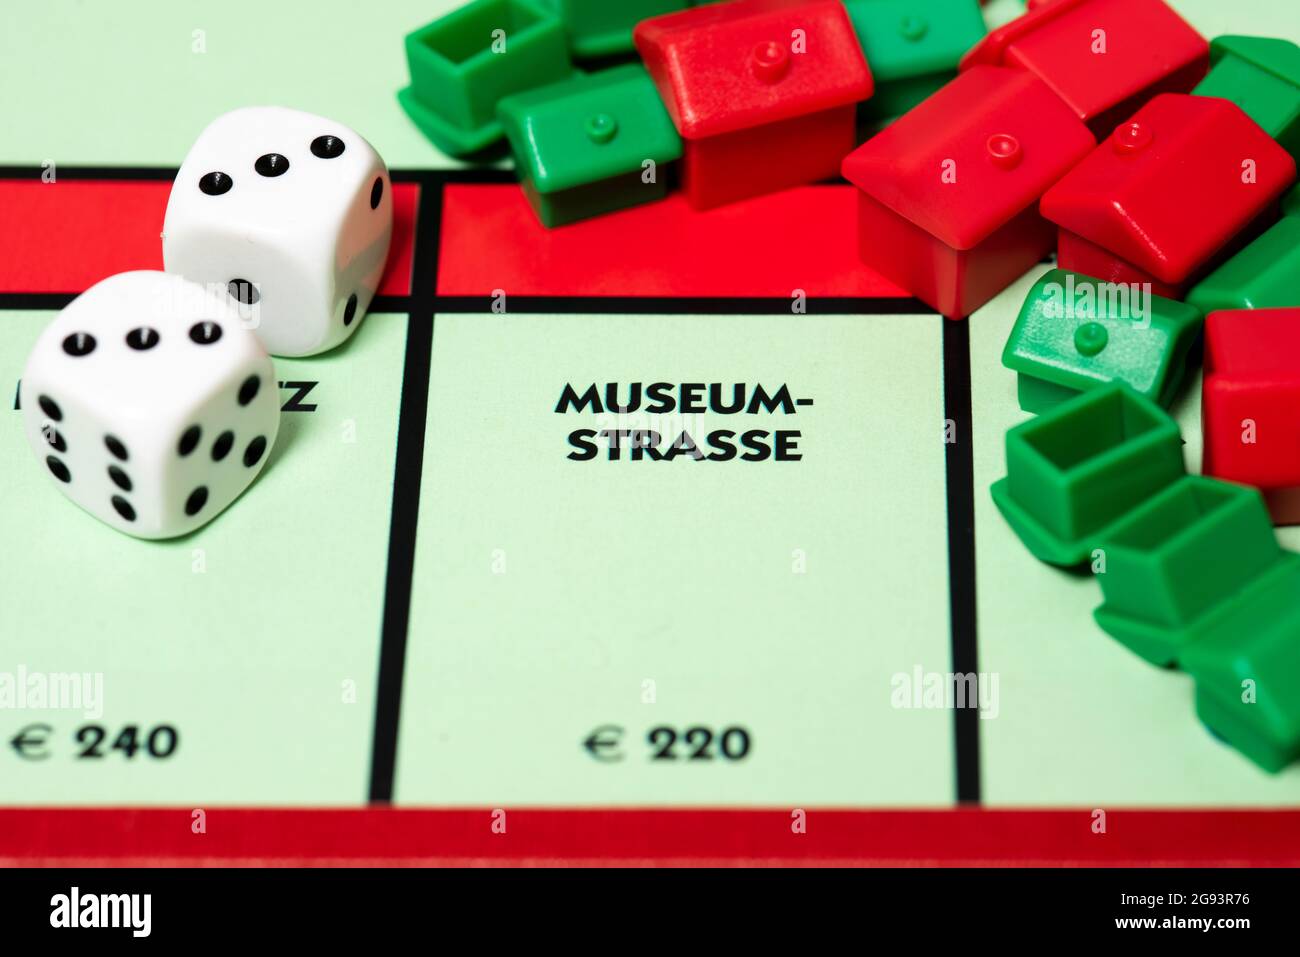 Gros plan de Museum-Strasse sur le Conseil allemand de monopole. Banque D'Images